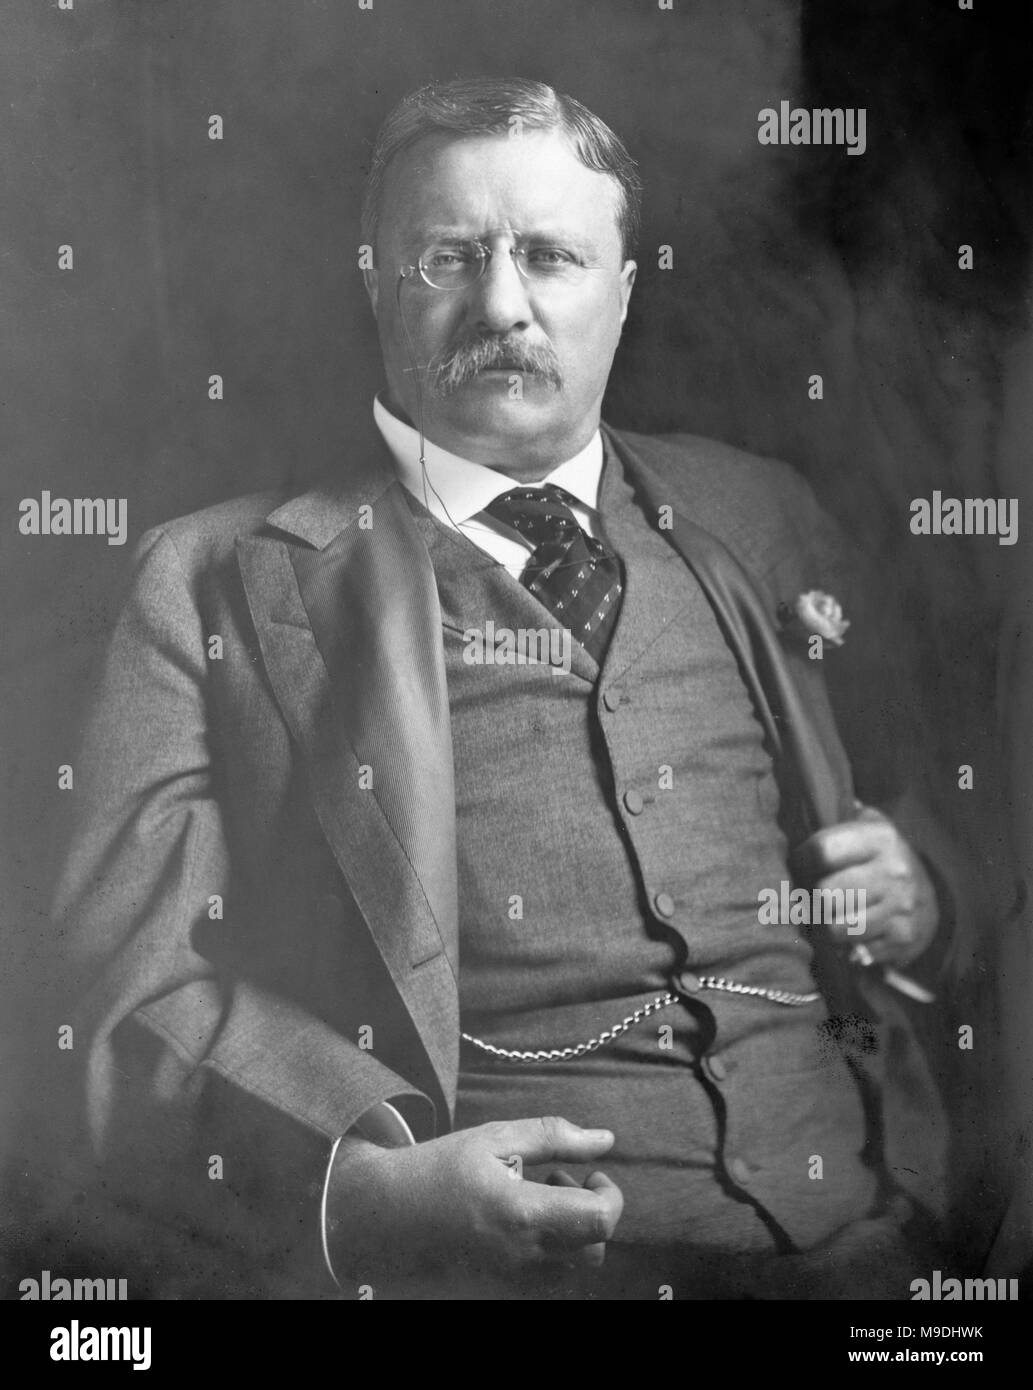 Theodore Roosevelt, Theodore Roosevelt Jr. (1858 - 1919) amerikanischer Staatsmann und Schriftsteller und 26. Präsident der Vereinigten Staaten von 1901 bis 1909 Stockfoto